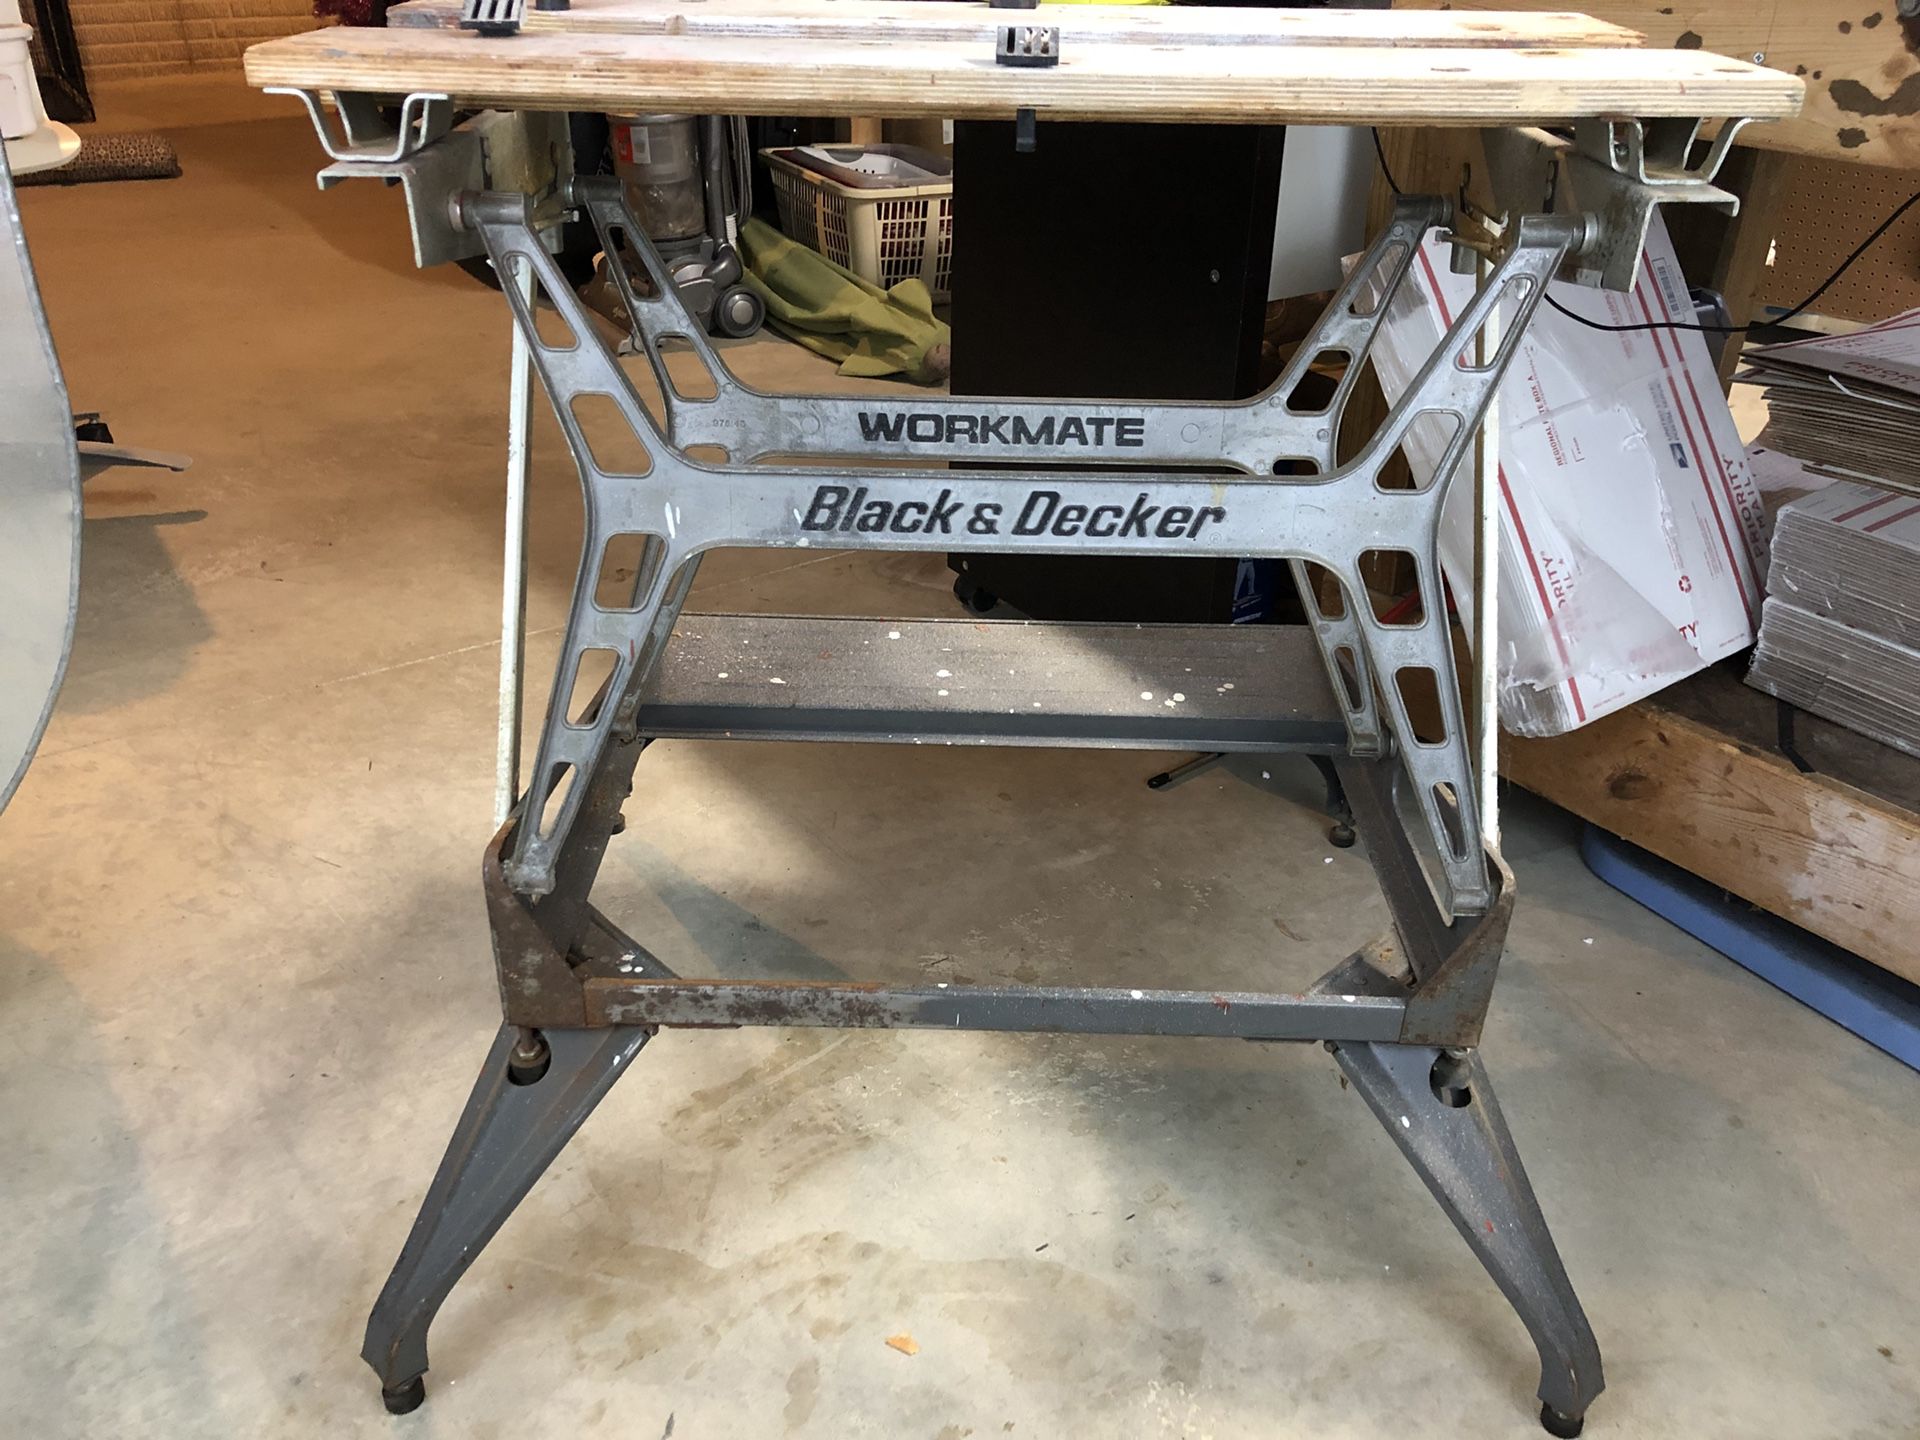 Black & Decker Workmate 425 work Bench for Sale in Hacienda Heights, CA -  OfferUp